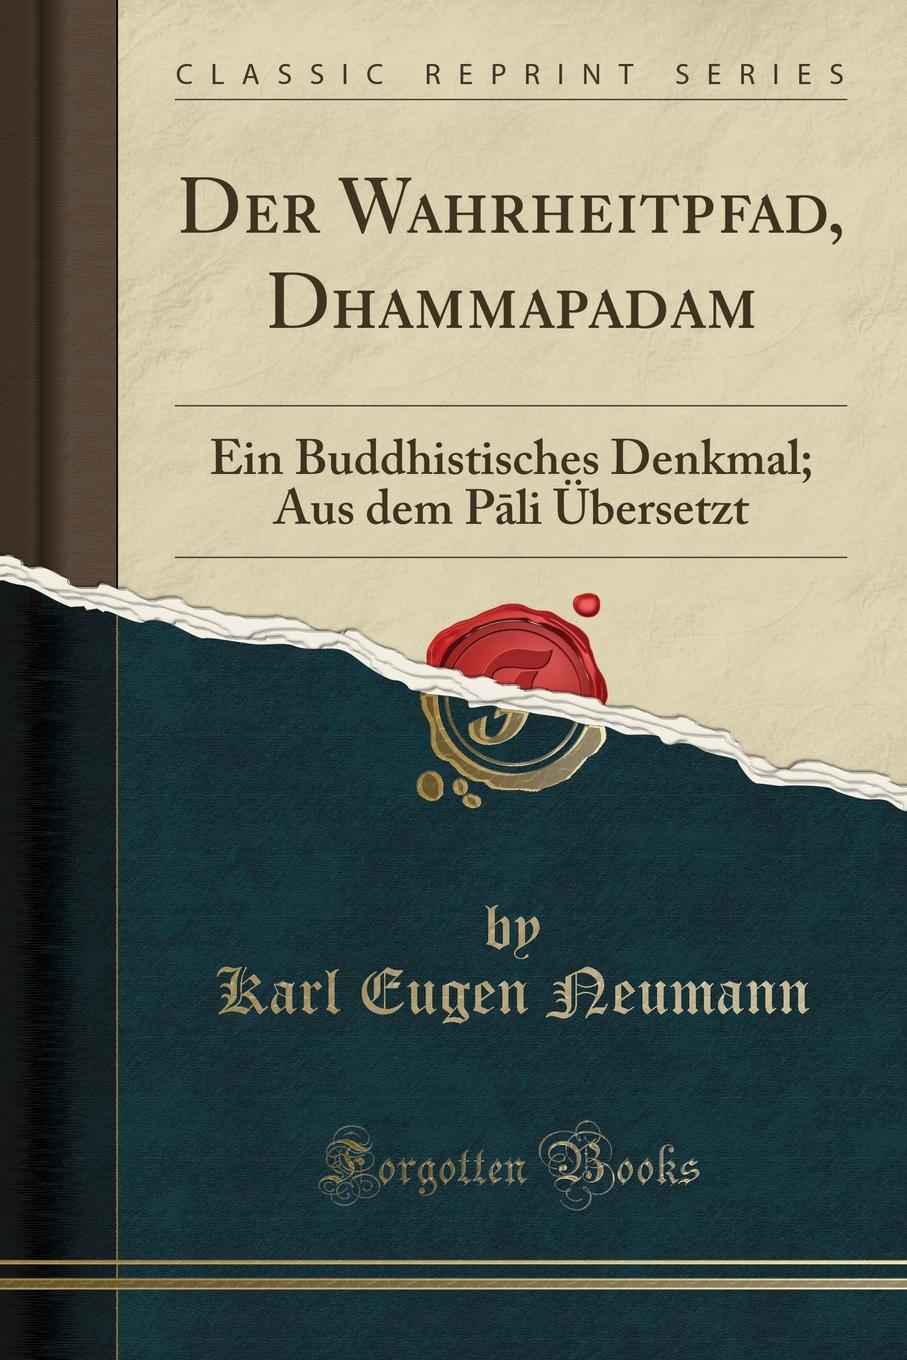 Der Wahrheitpfad, Dhammapadam. Ein Buddhistisches Denkmal; Aus dem Pali Ubersetzt (Classic Reprint)